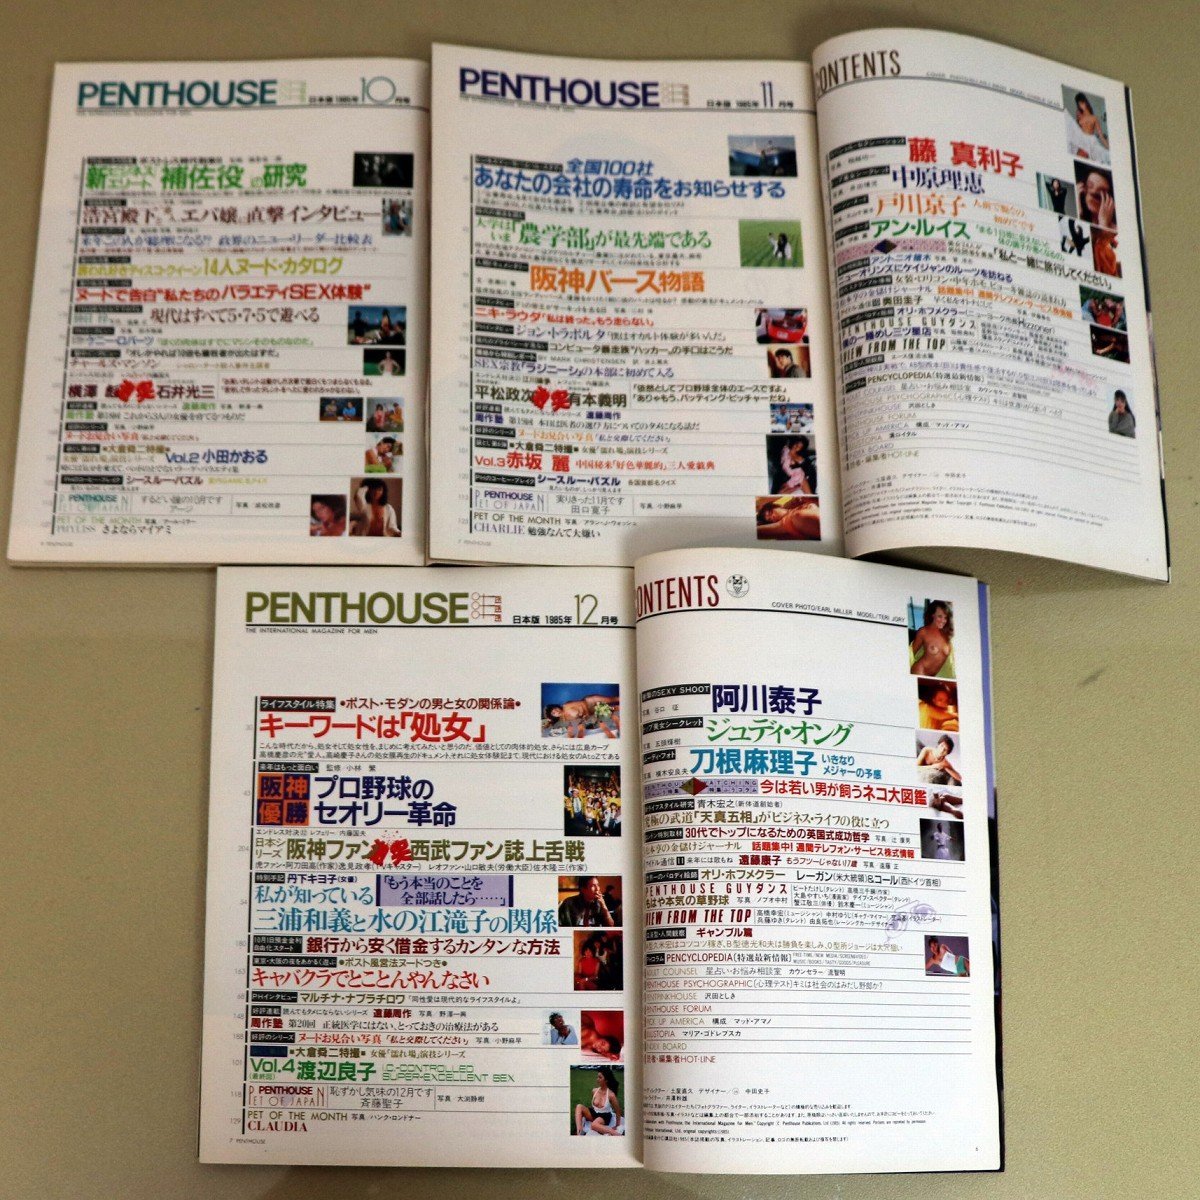 月刊・PENTHOUSE・ペントハウス・日本版・1985年10月、11月、12月・No.220903-02・梱包サイズ60_画像3